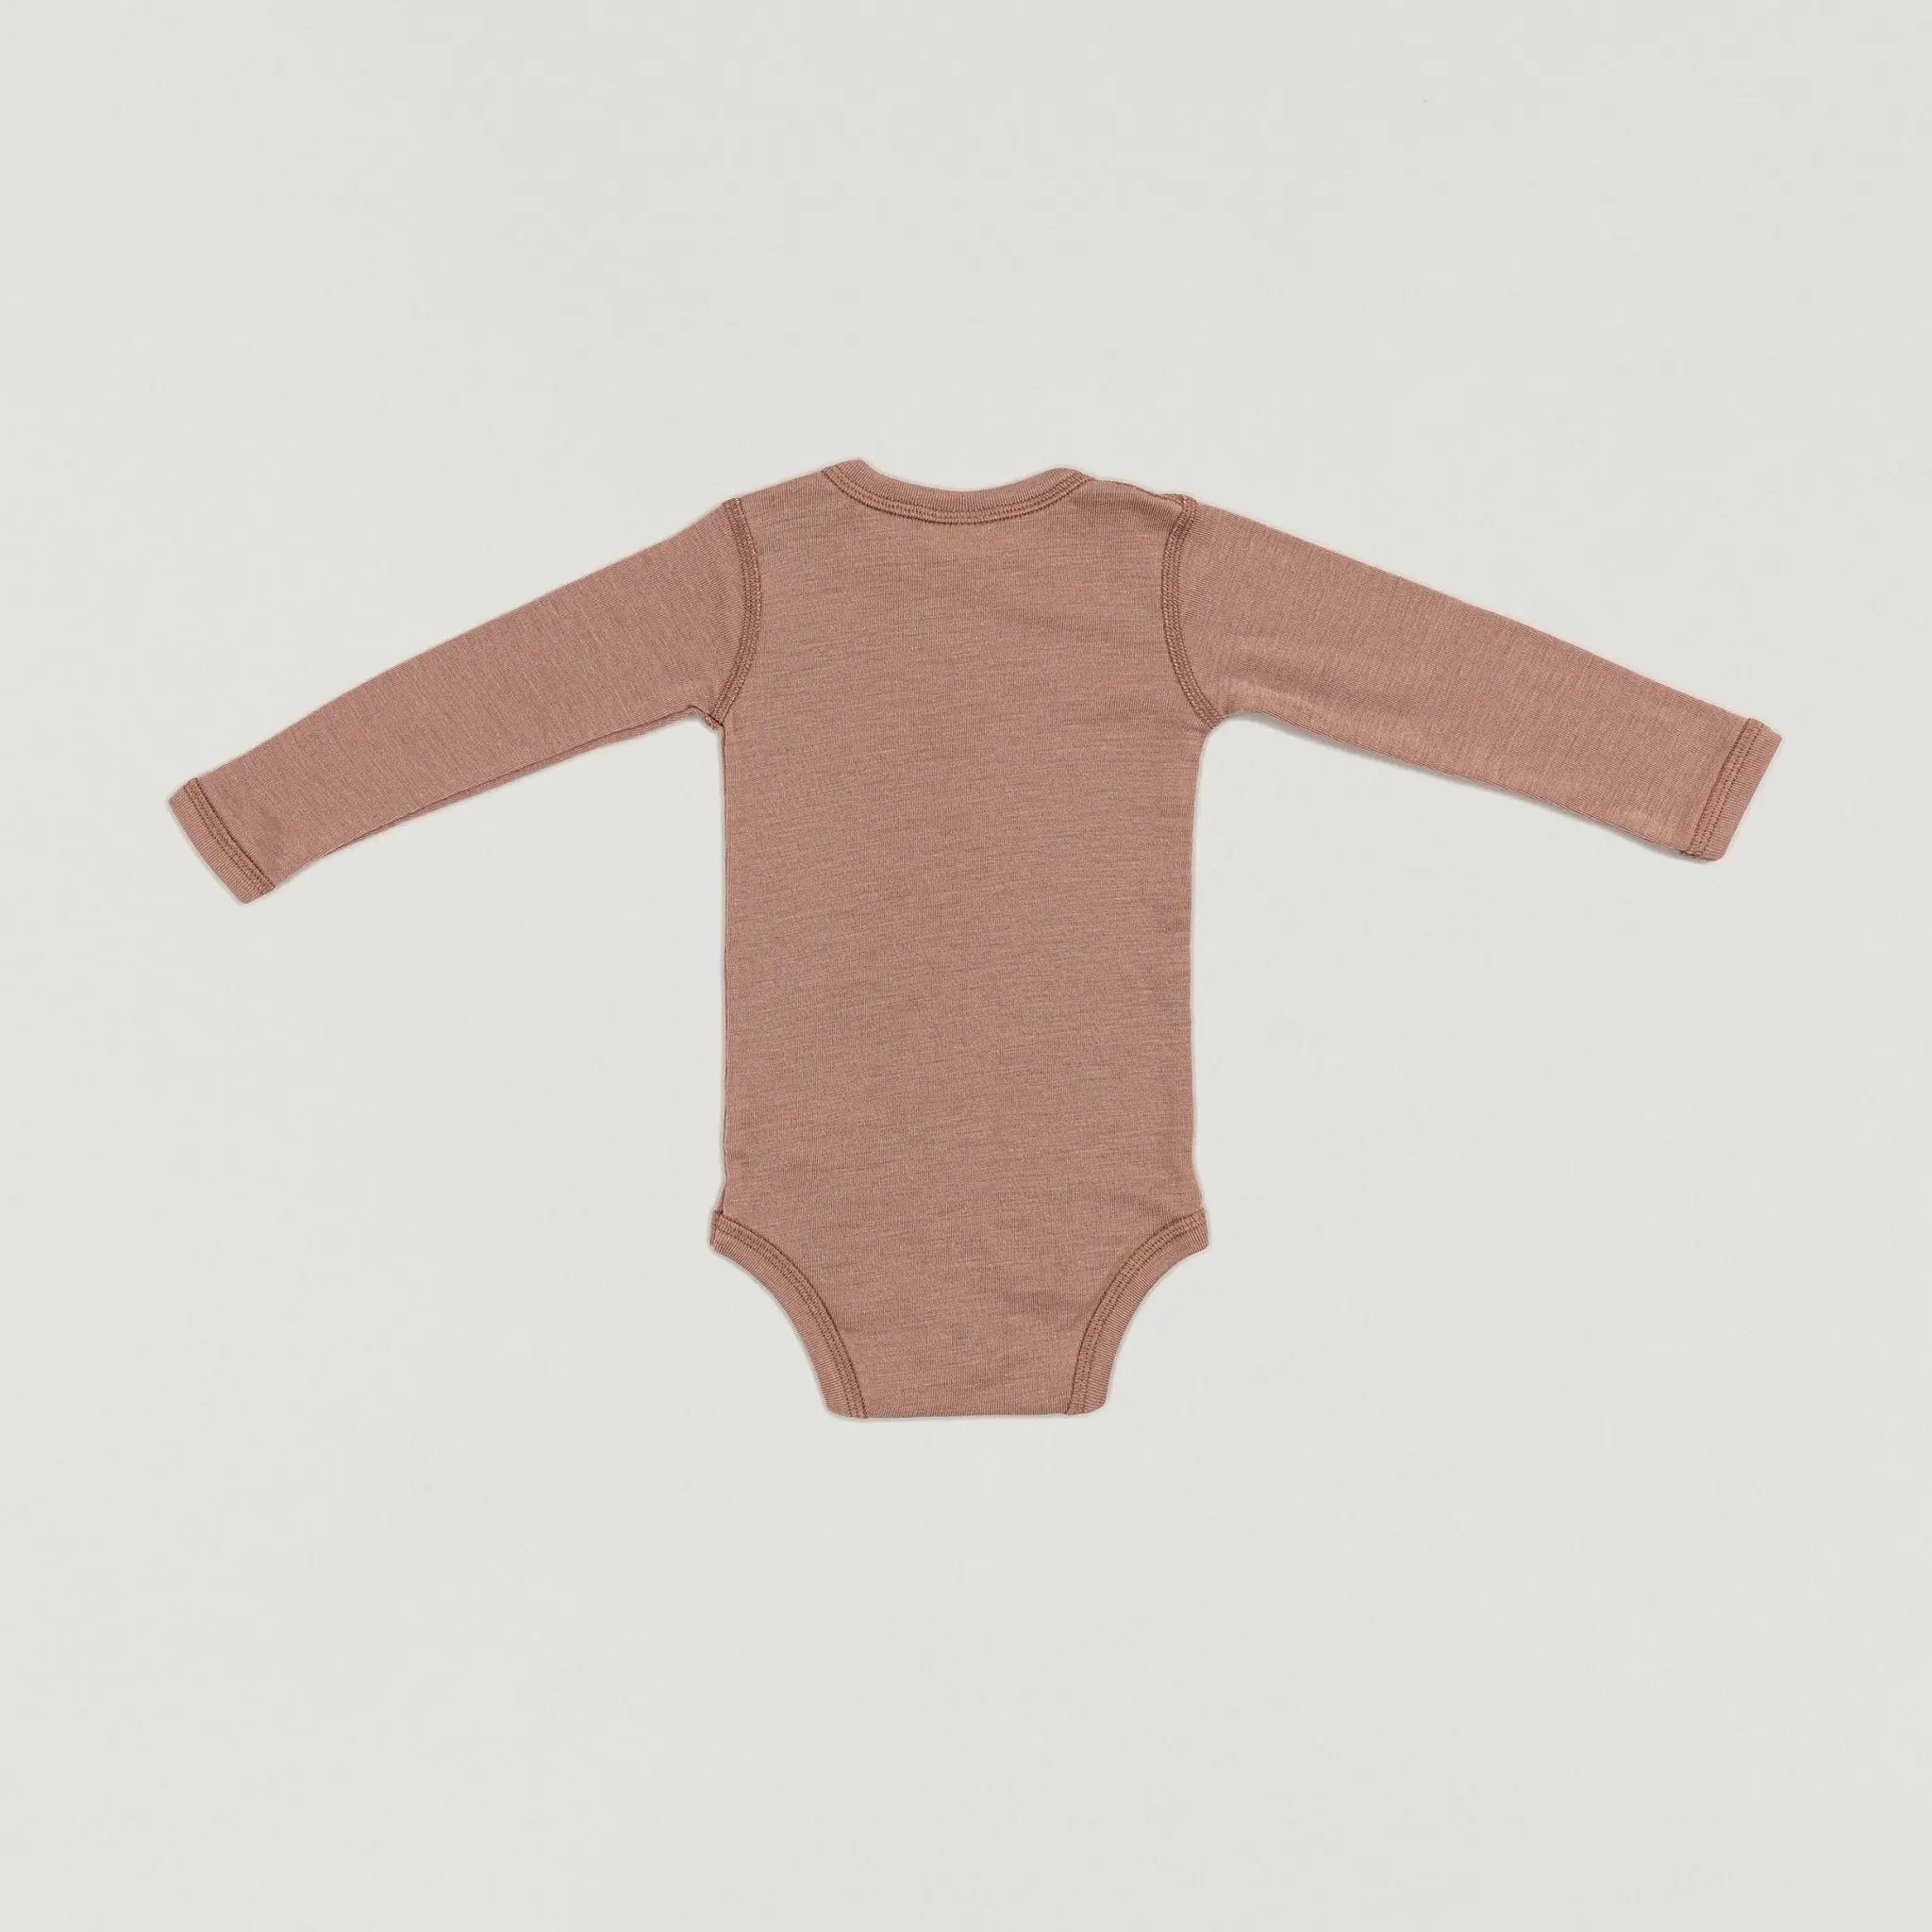 Ein Produktbild des Langarmwickelbodys aus Wolle und Seide in Rose-Fawn der Babybox Collection in der Rückansicht im Onlineshop von Babybox and Family